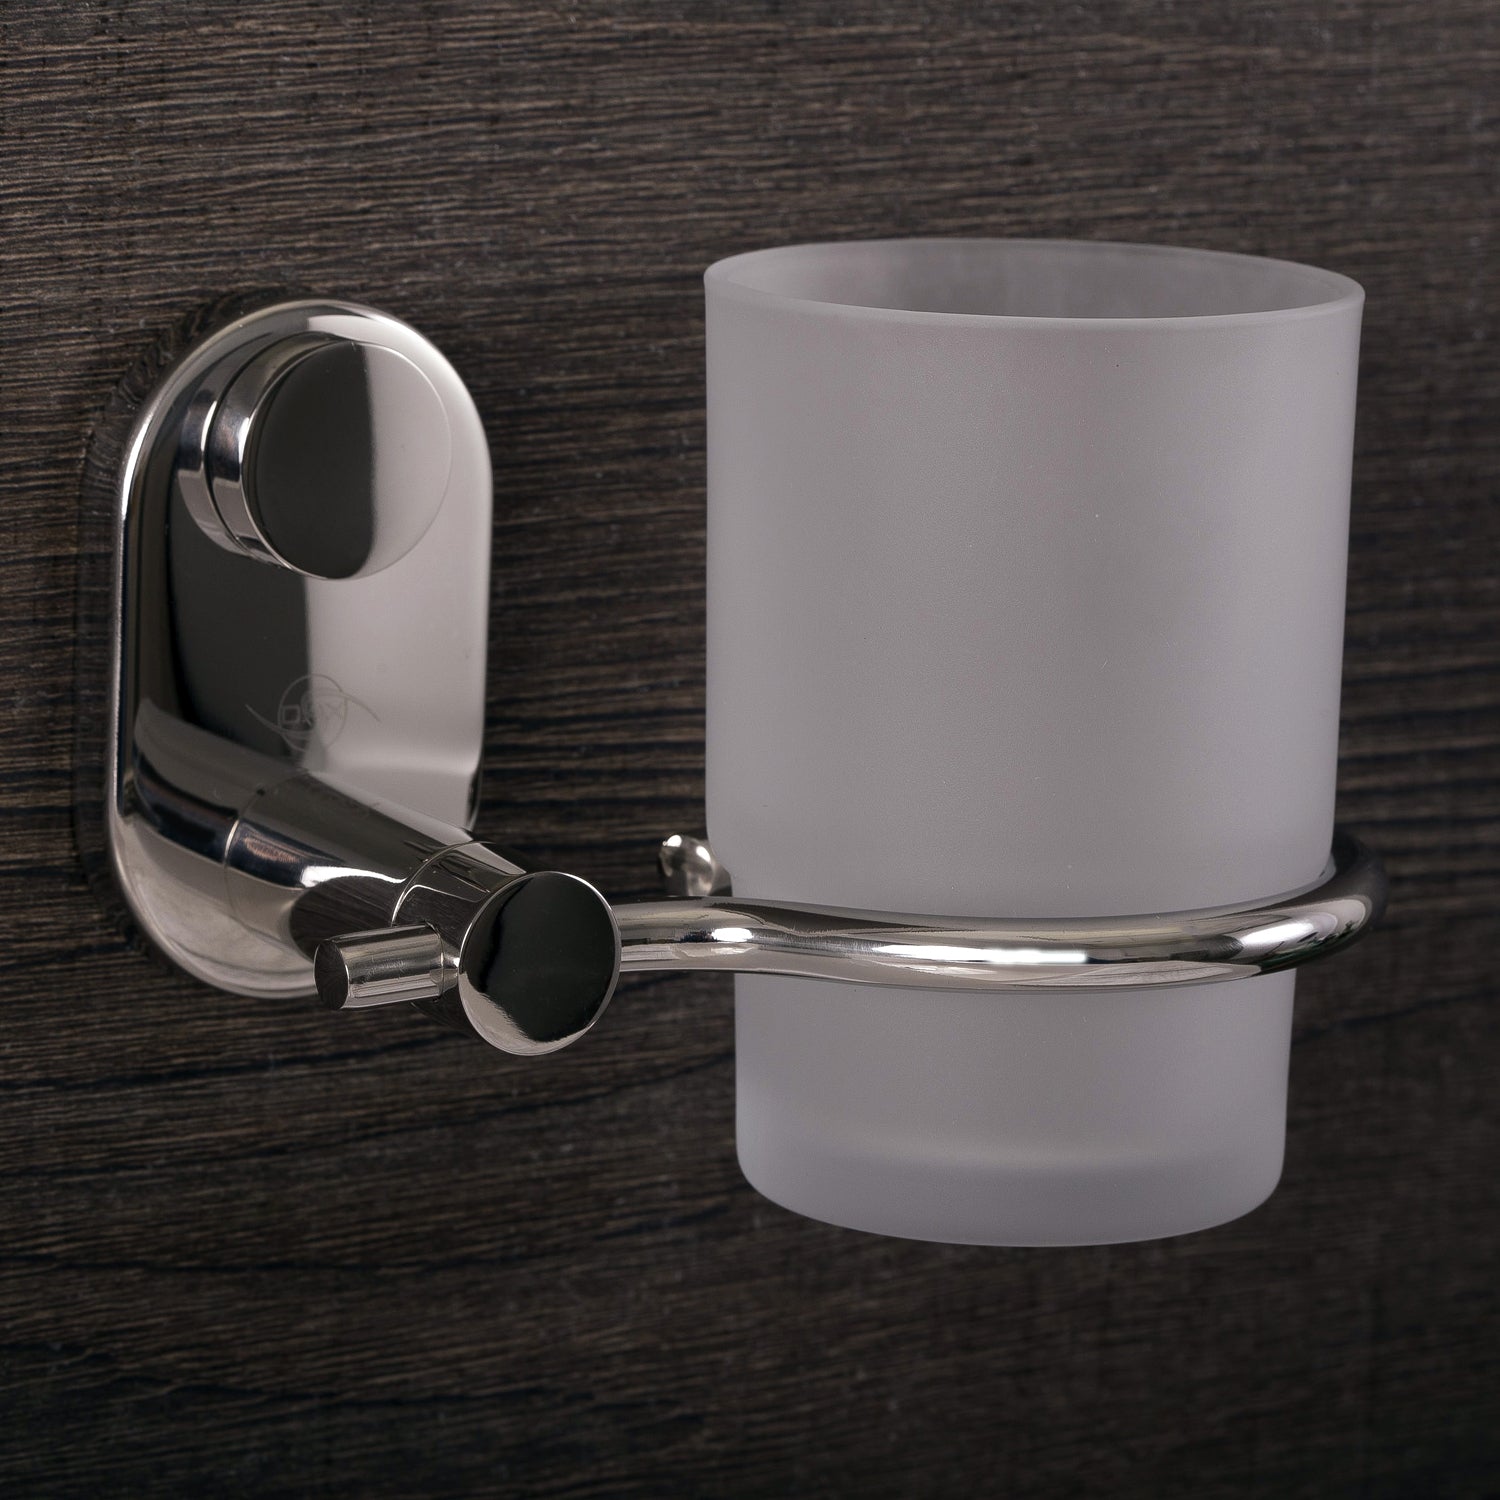 DAX - Soporte para cepillo de dientes de vaso individual para baño, montaje en pared de acero inoxidable con vaso de vidrio, acabado satinado, 4-5/16 x 3-3/4 x 4-1/8 pulgadas (DAX-G0206-S)